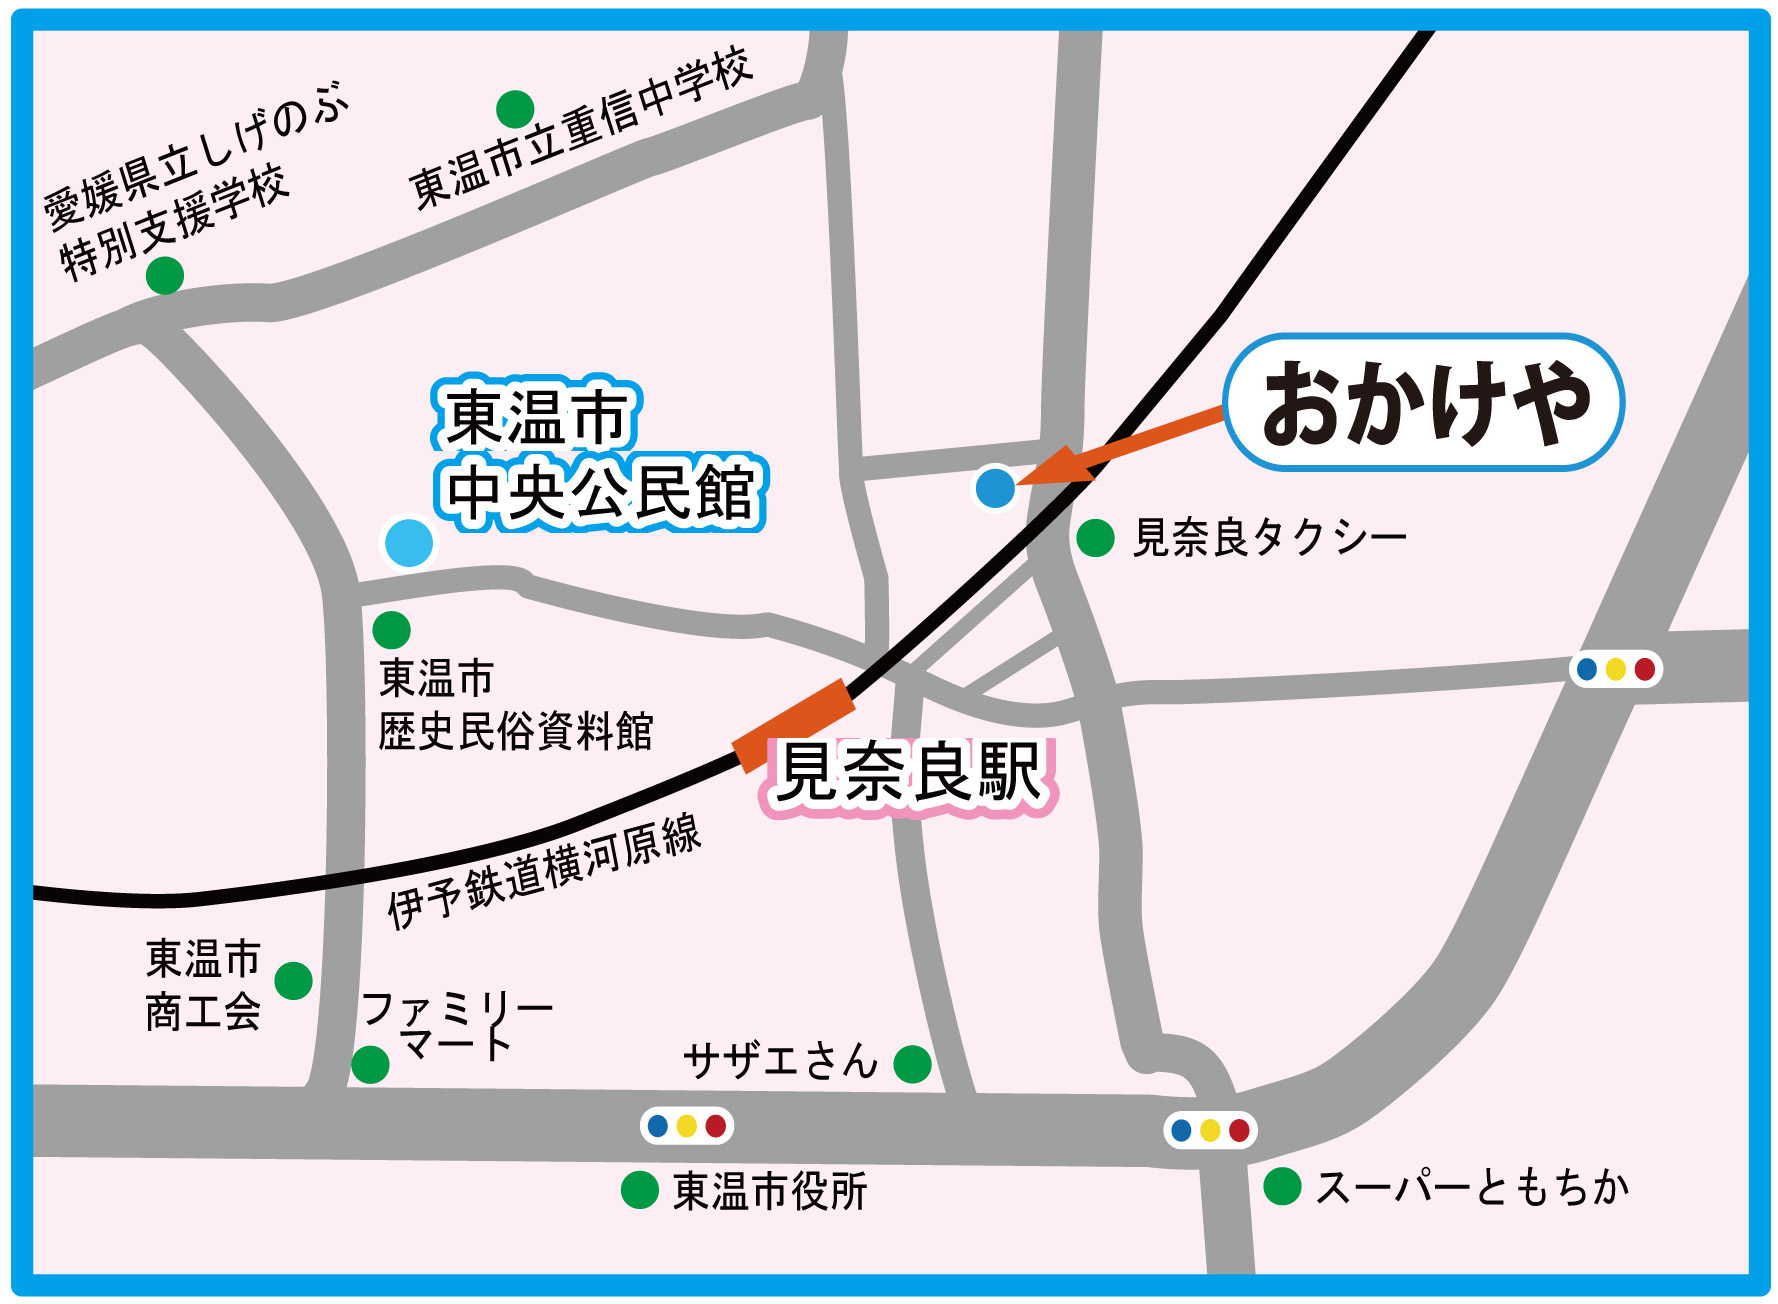 おかけや・見奈良駅・東温市中央公民館略図